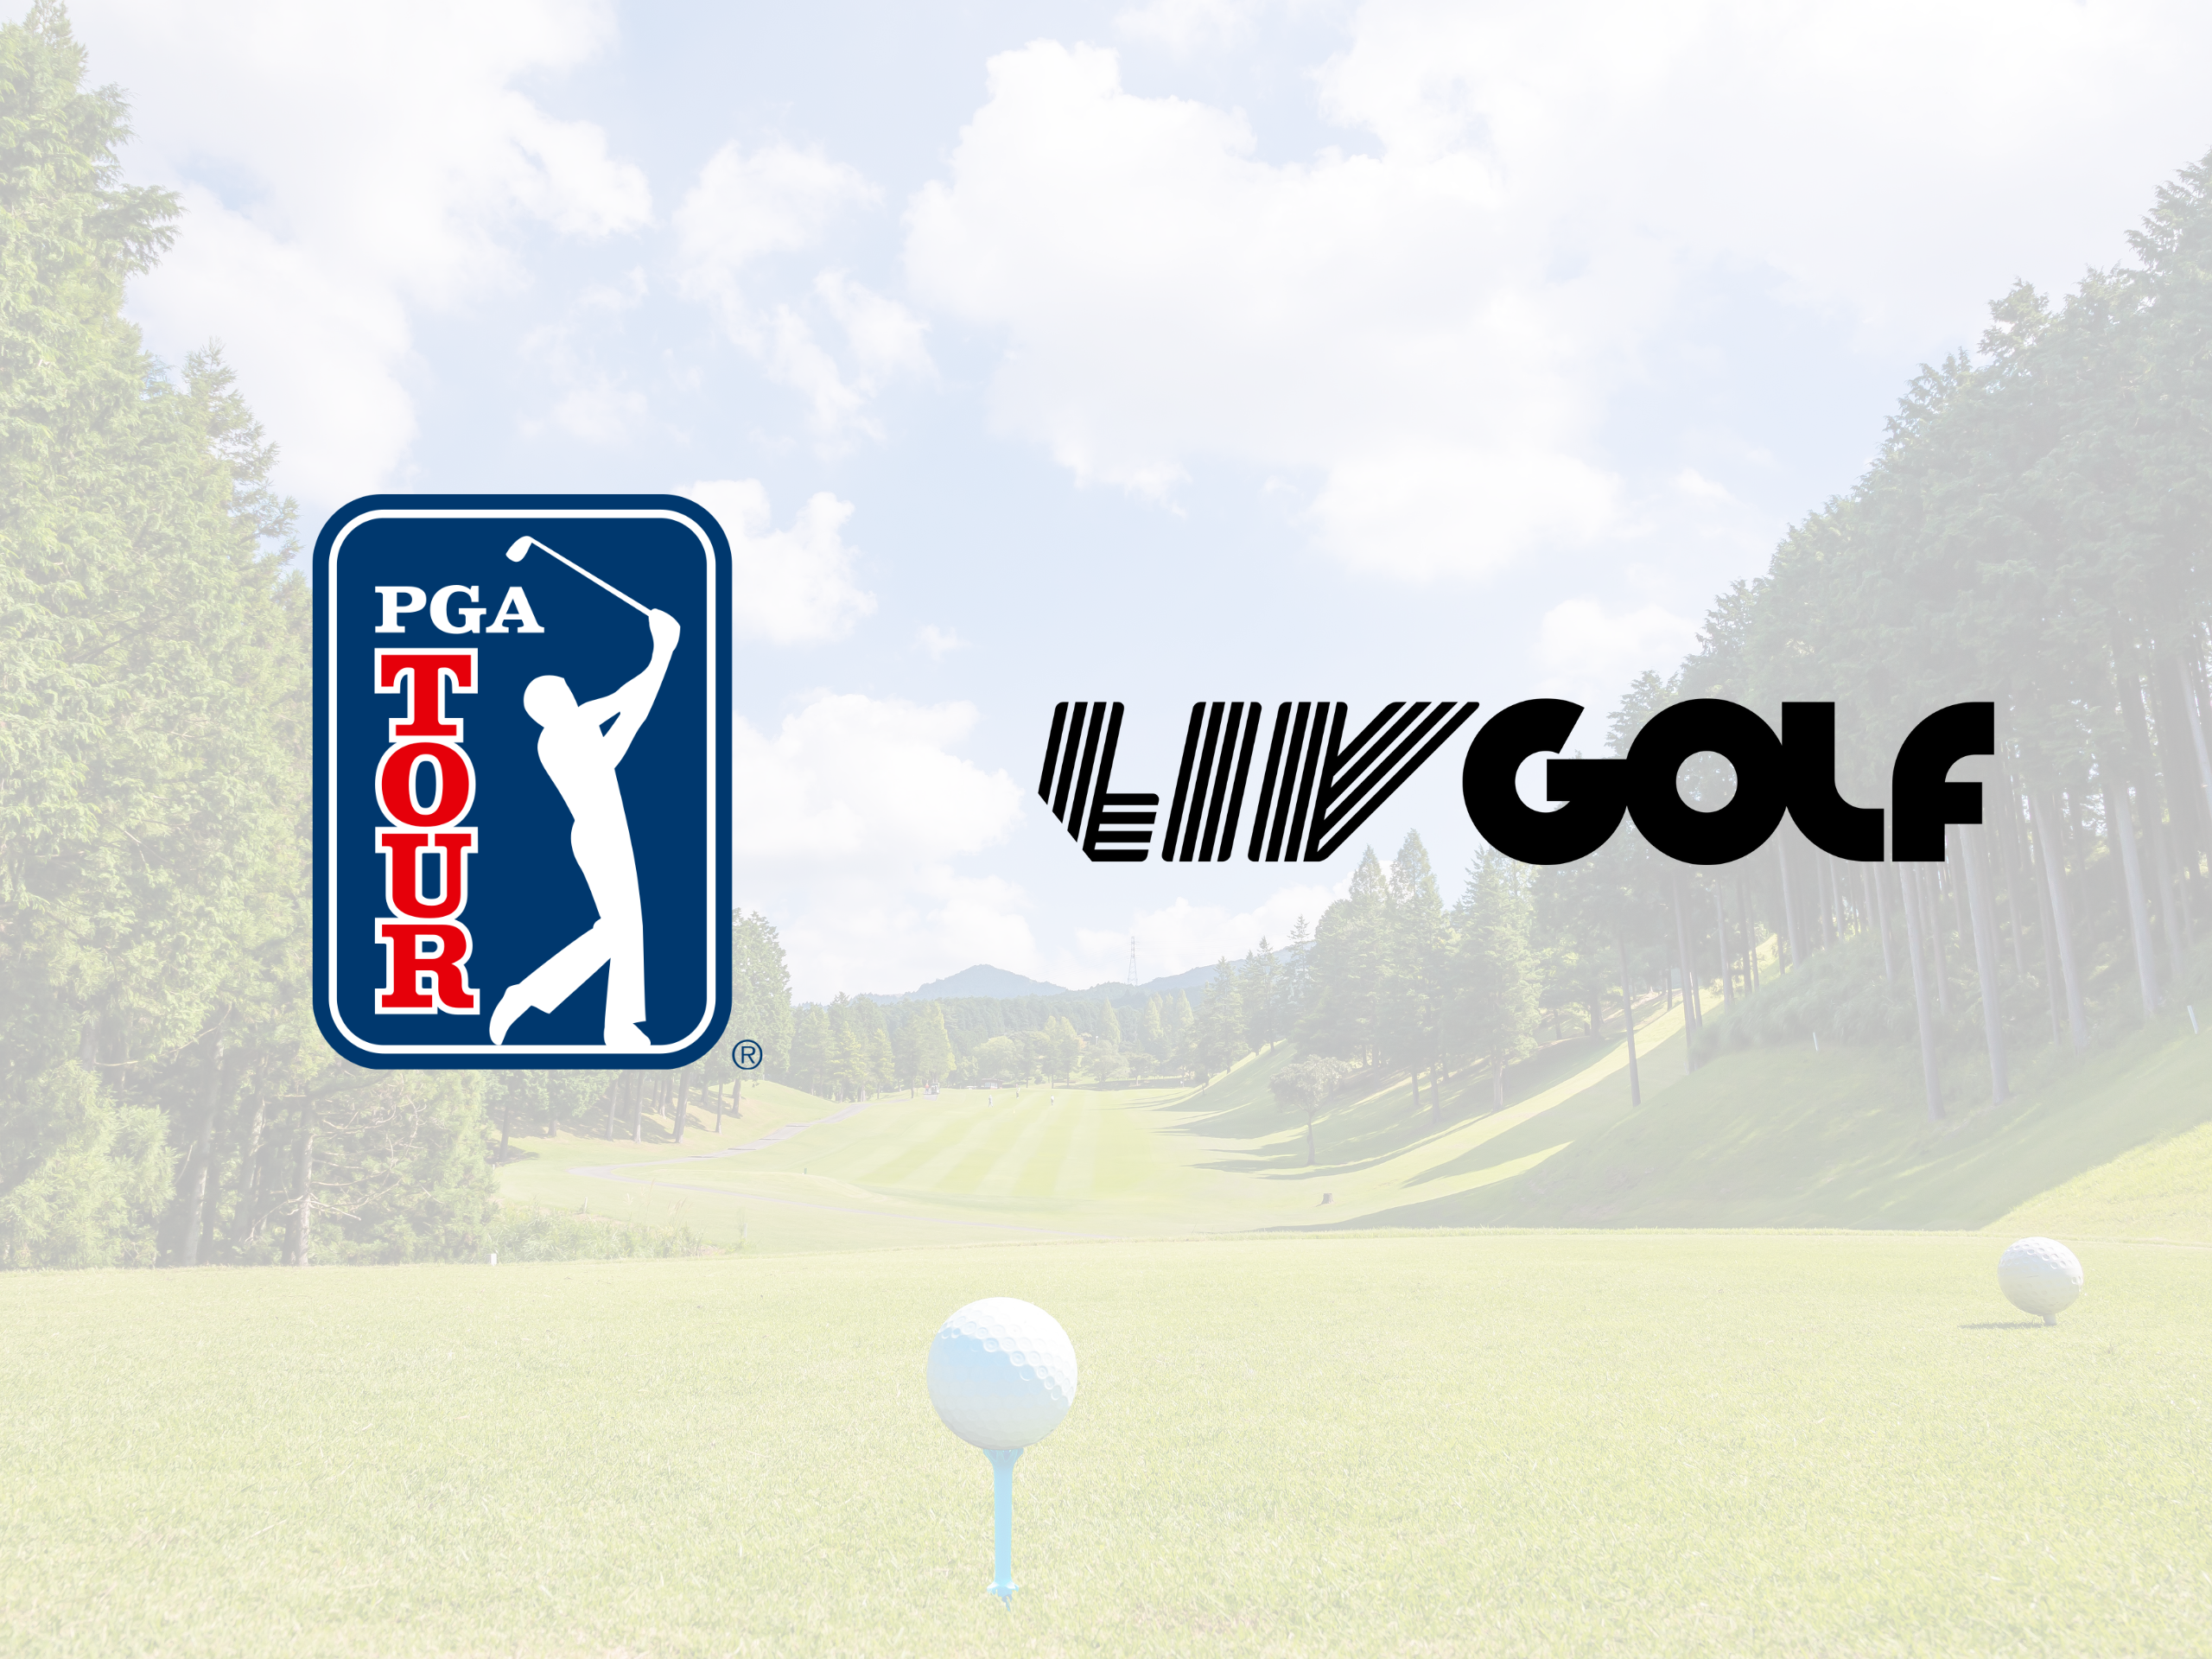 LIV Golf and PGA Merger